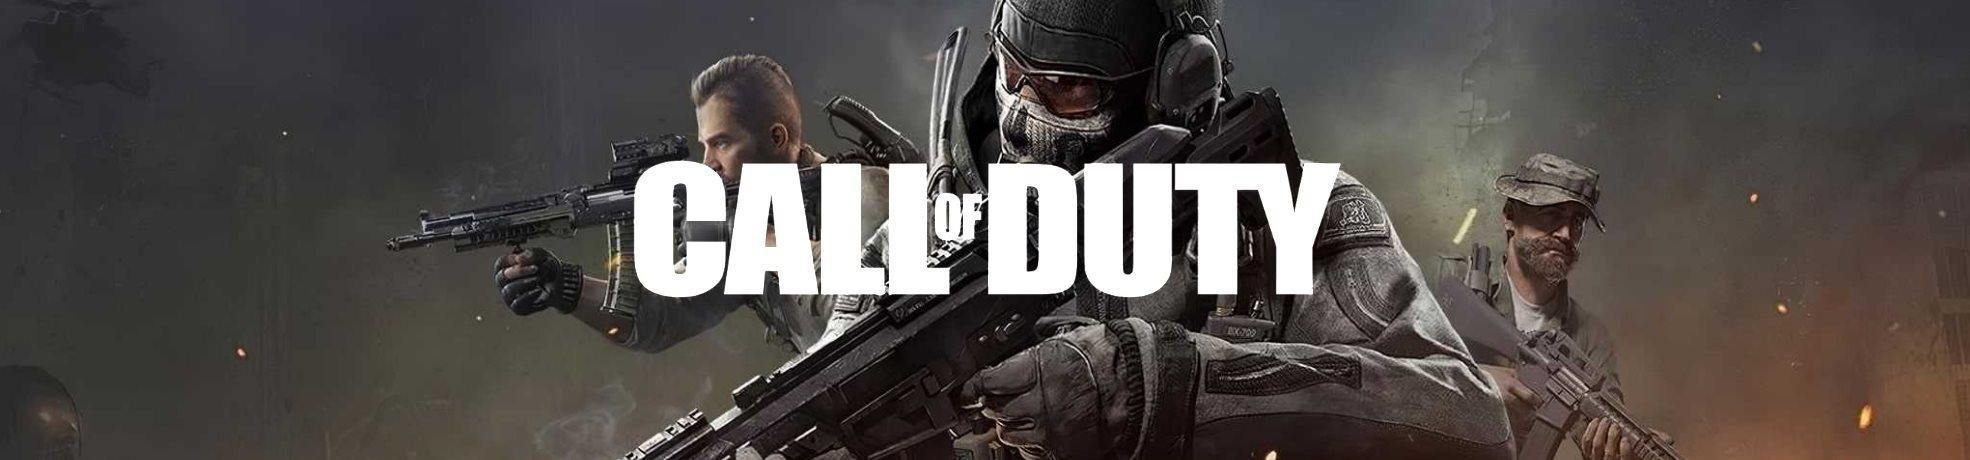 Call Of Duty | משחקי קול אוף דיוטי - EXON - גיימינג ותוכנות - משחקים ותוכנות למחשב ולאקס בוקס!